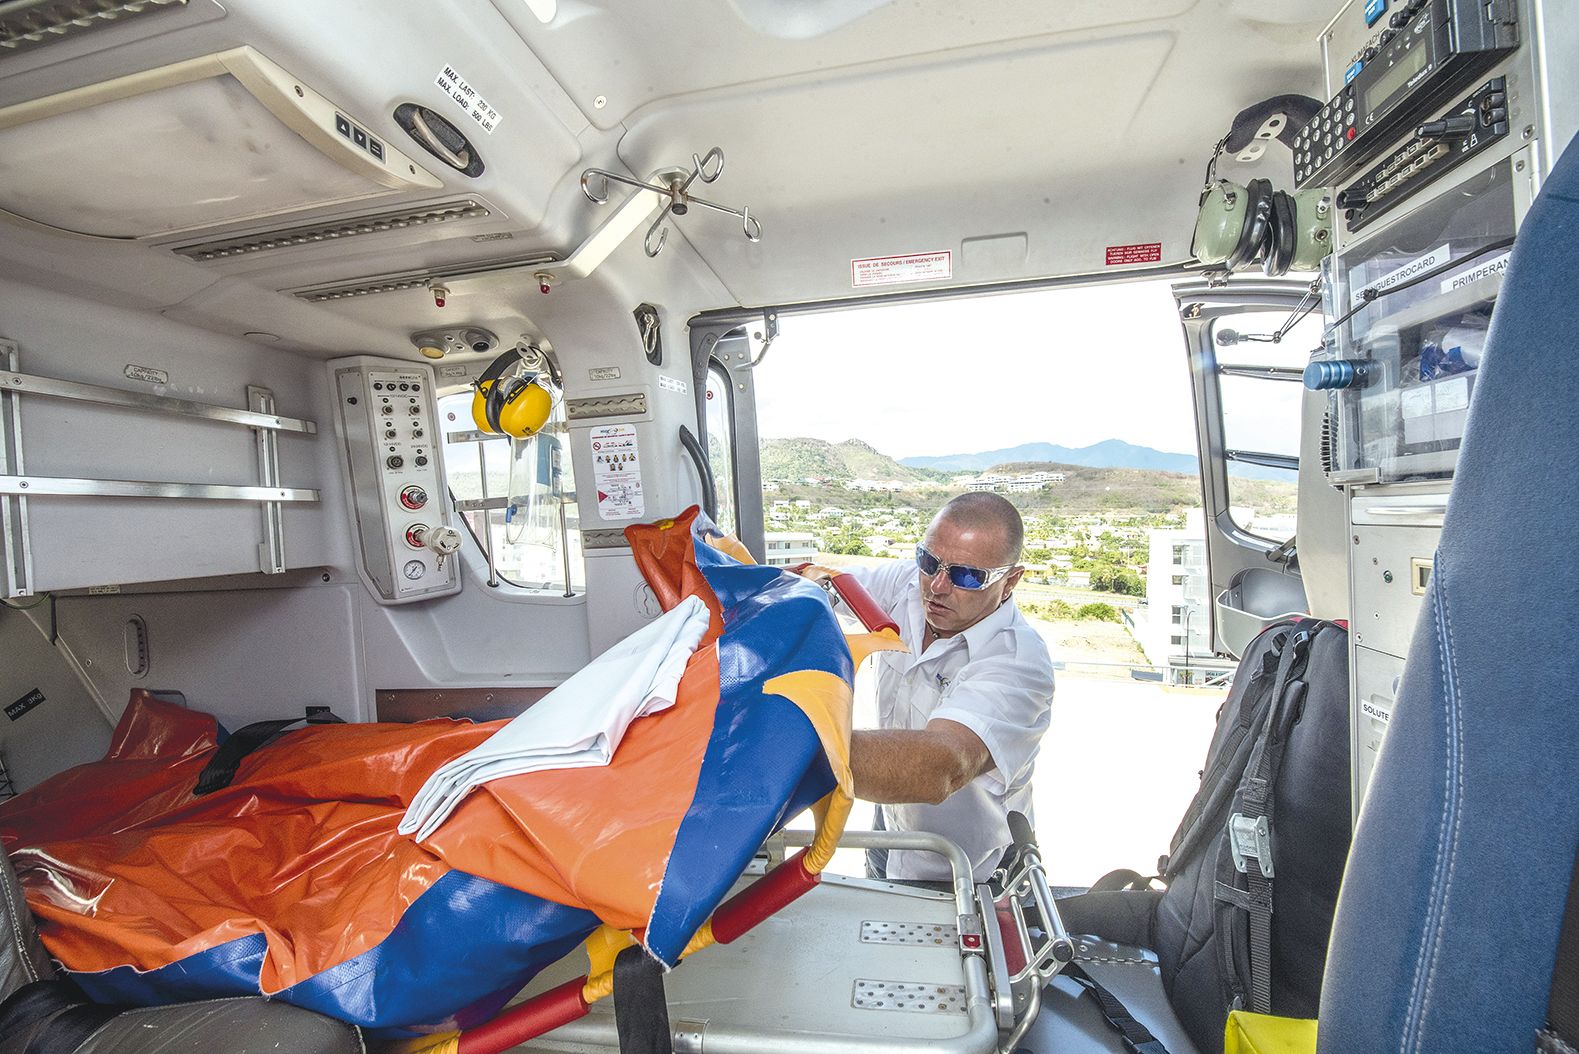 Florent, pilote expérimenté, montre la civière de l’hélicoptère, qui ne peut accueillir qu’un seul blessé. En opération, c’est systématiquement deux soignants qui sont embarqués : un médecin et un infirmier.